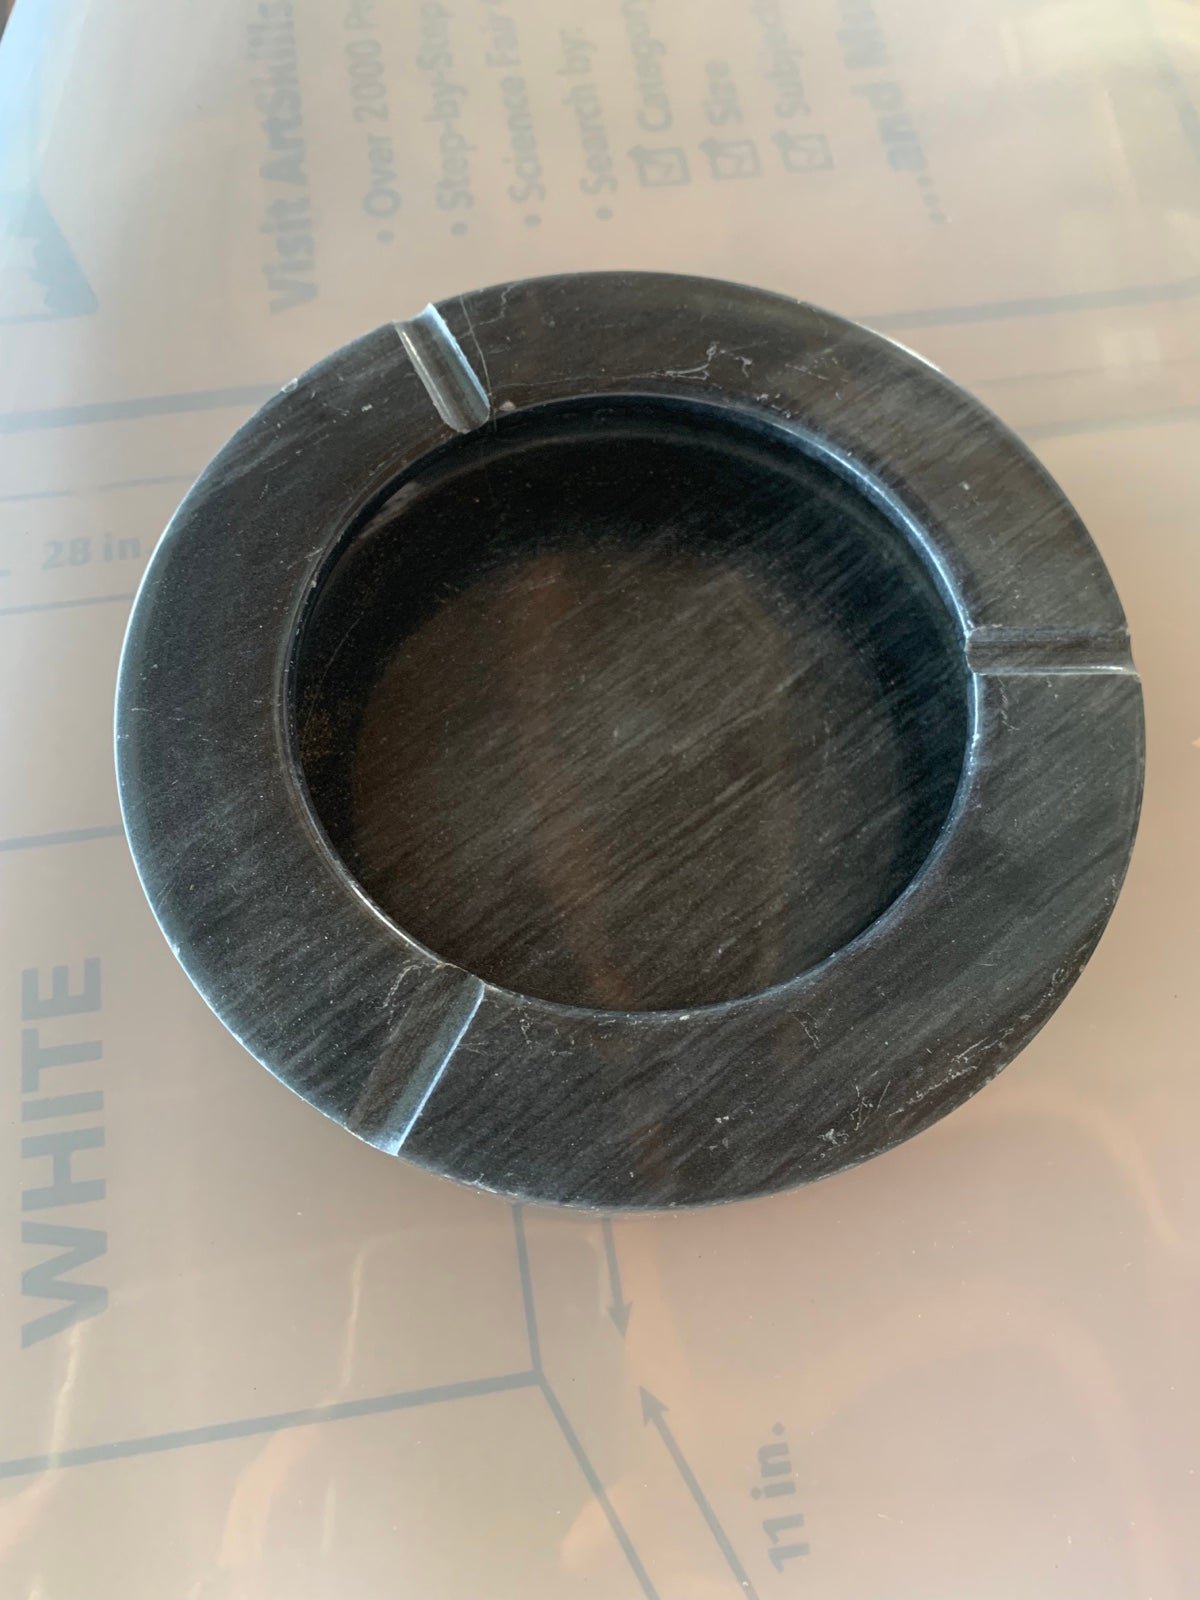 marble ashtray charcoal gray 6” diameter 3 slot mid cen